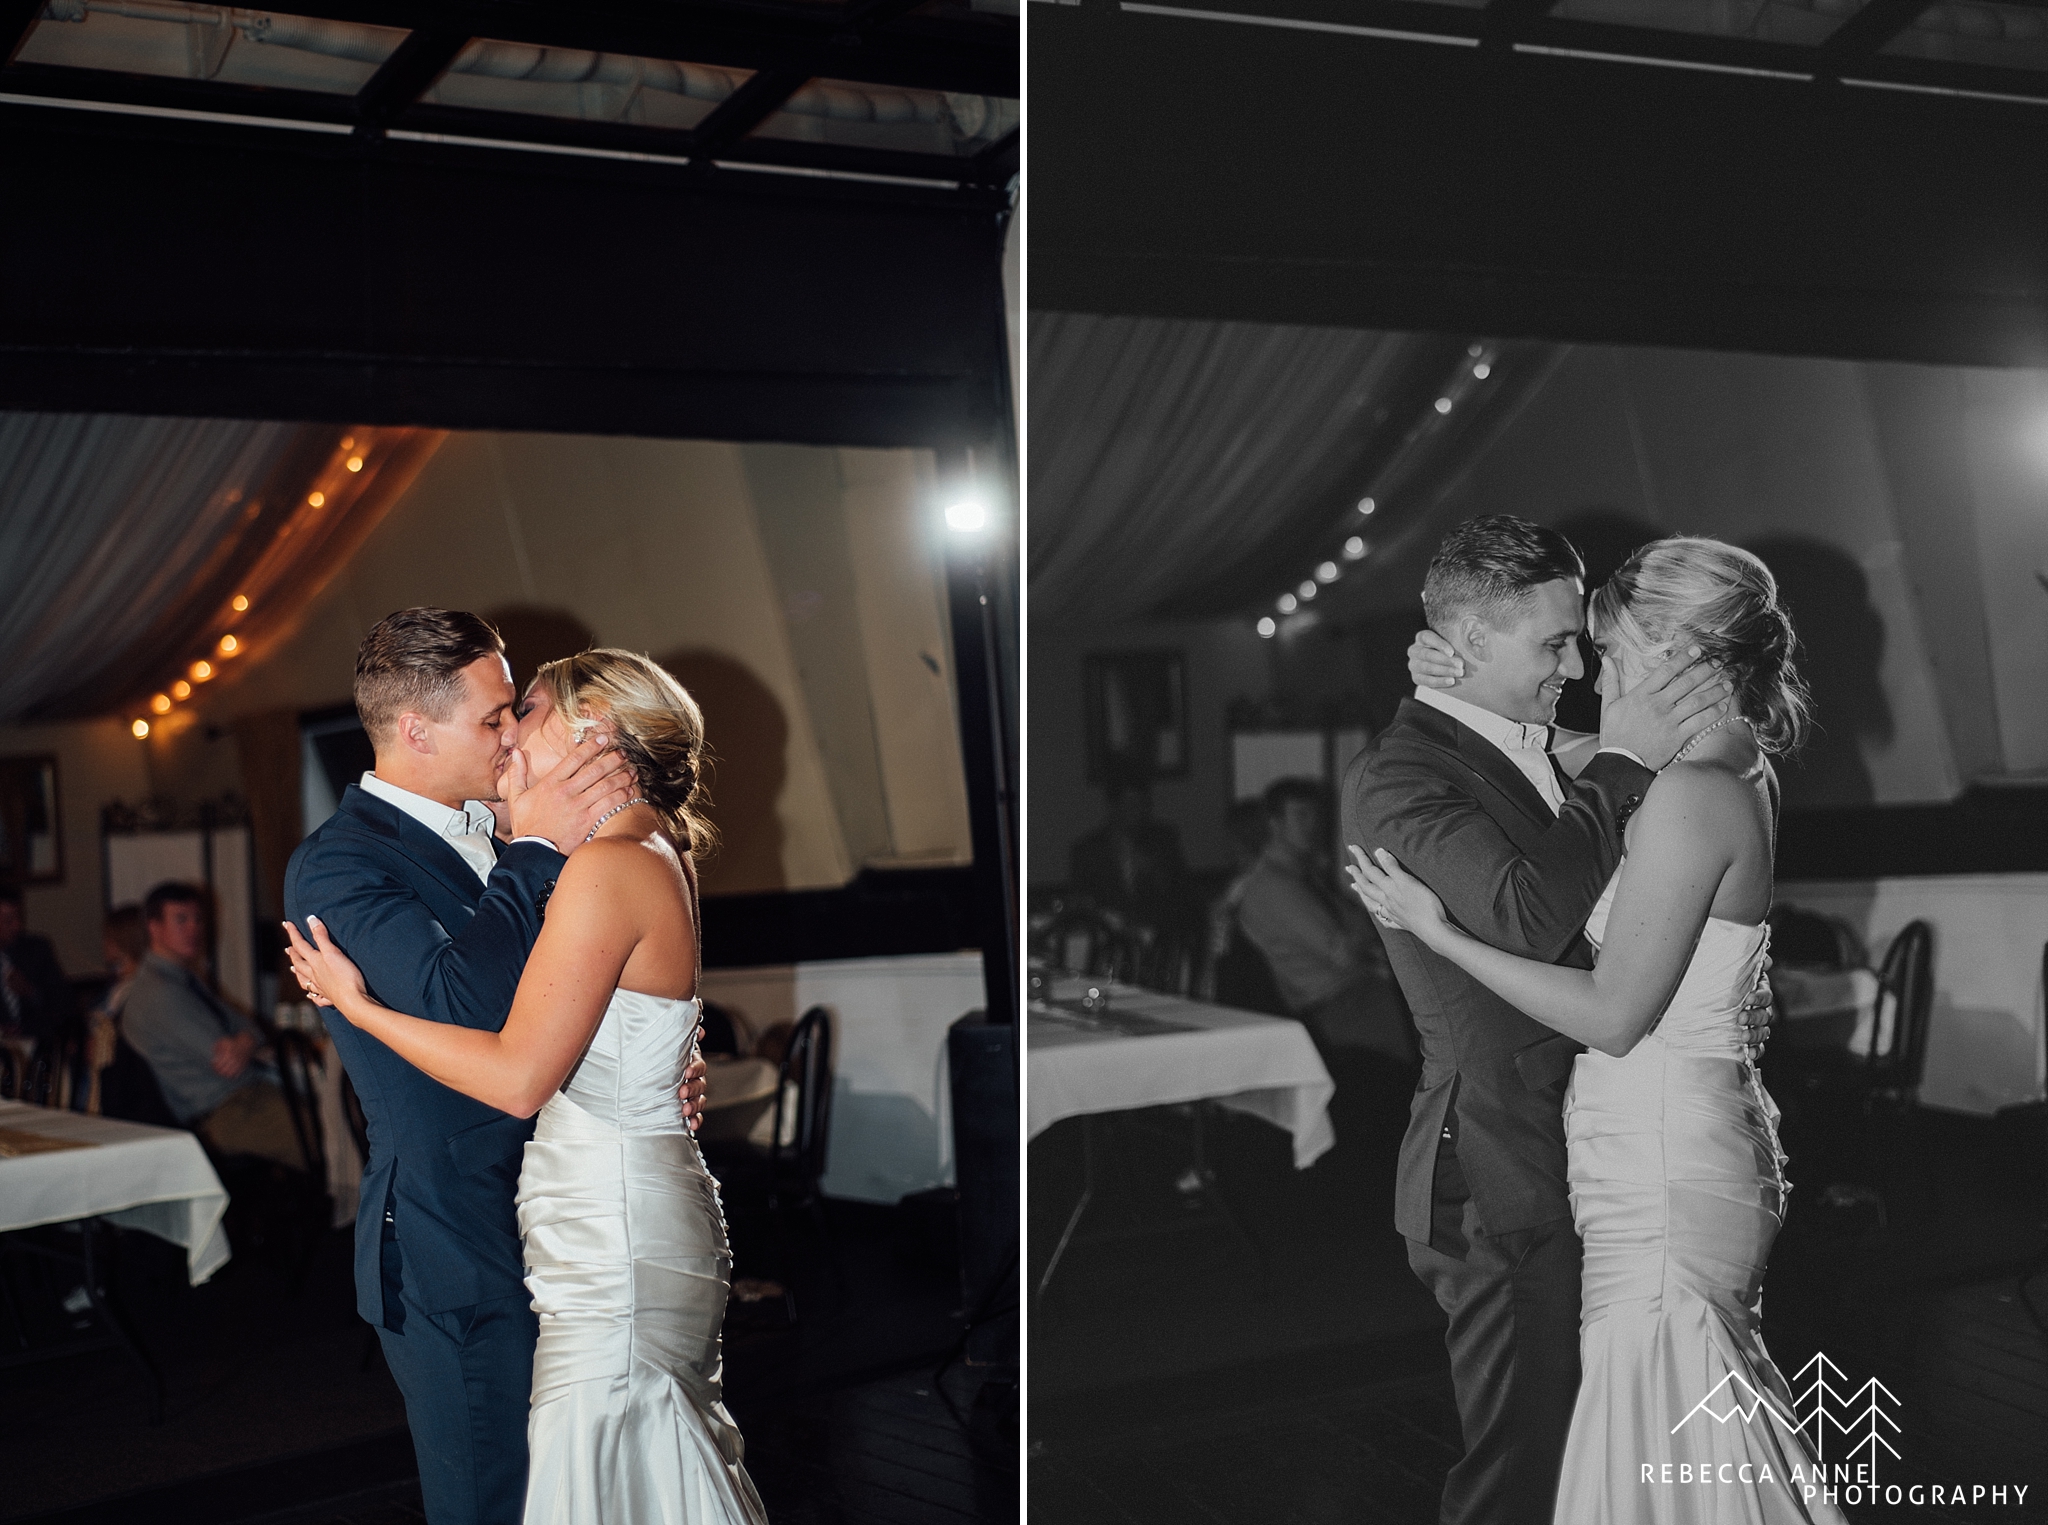 MV Skansonia Wedding,Ferry Boat Wedding,Downtown Seattel Wedding,Seattle Wedding Photographer,Tacoma Wedding Photographer,Seattle Wedding Photography,